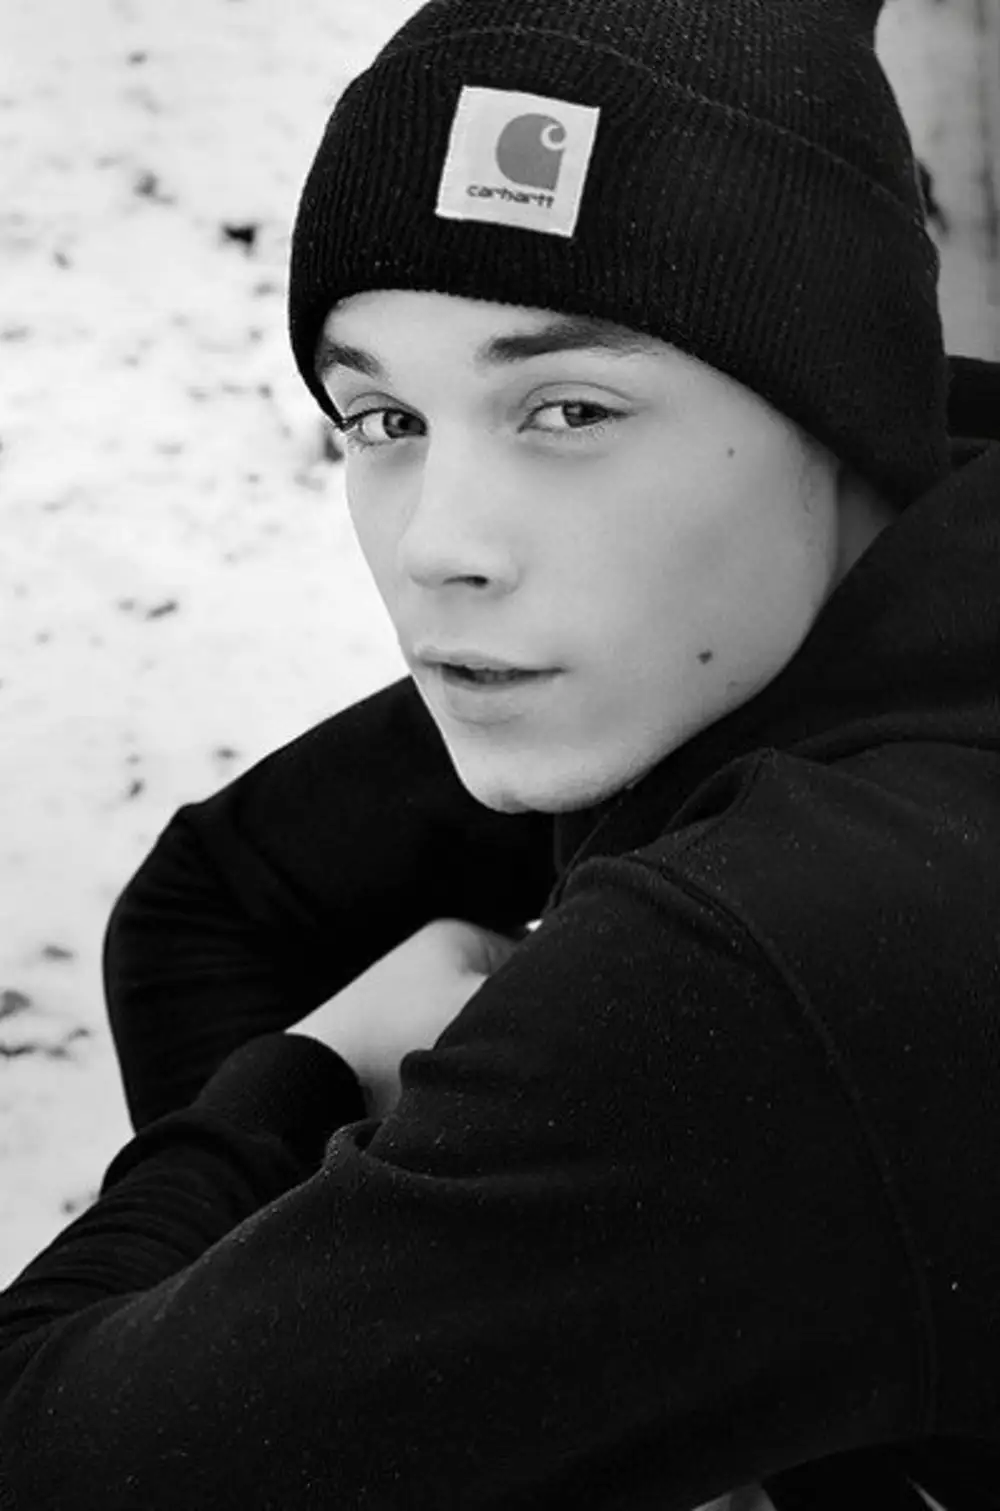 Vk com мальчики. Миша Мироненко. Красивые парни 16 лет. Красивый парень в шапке.